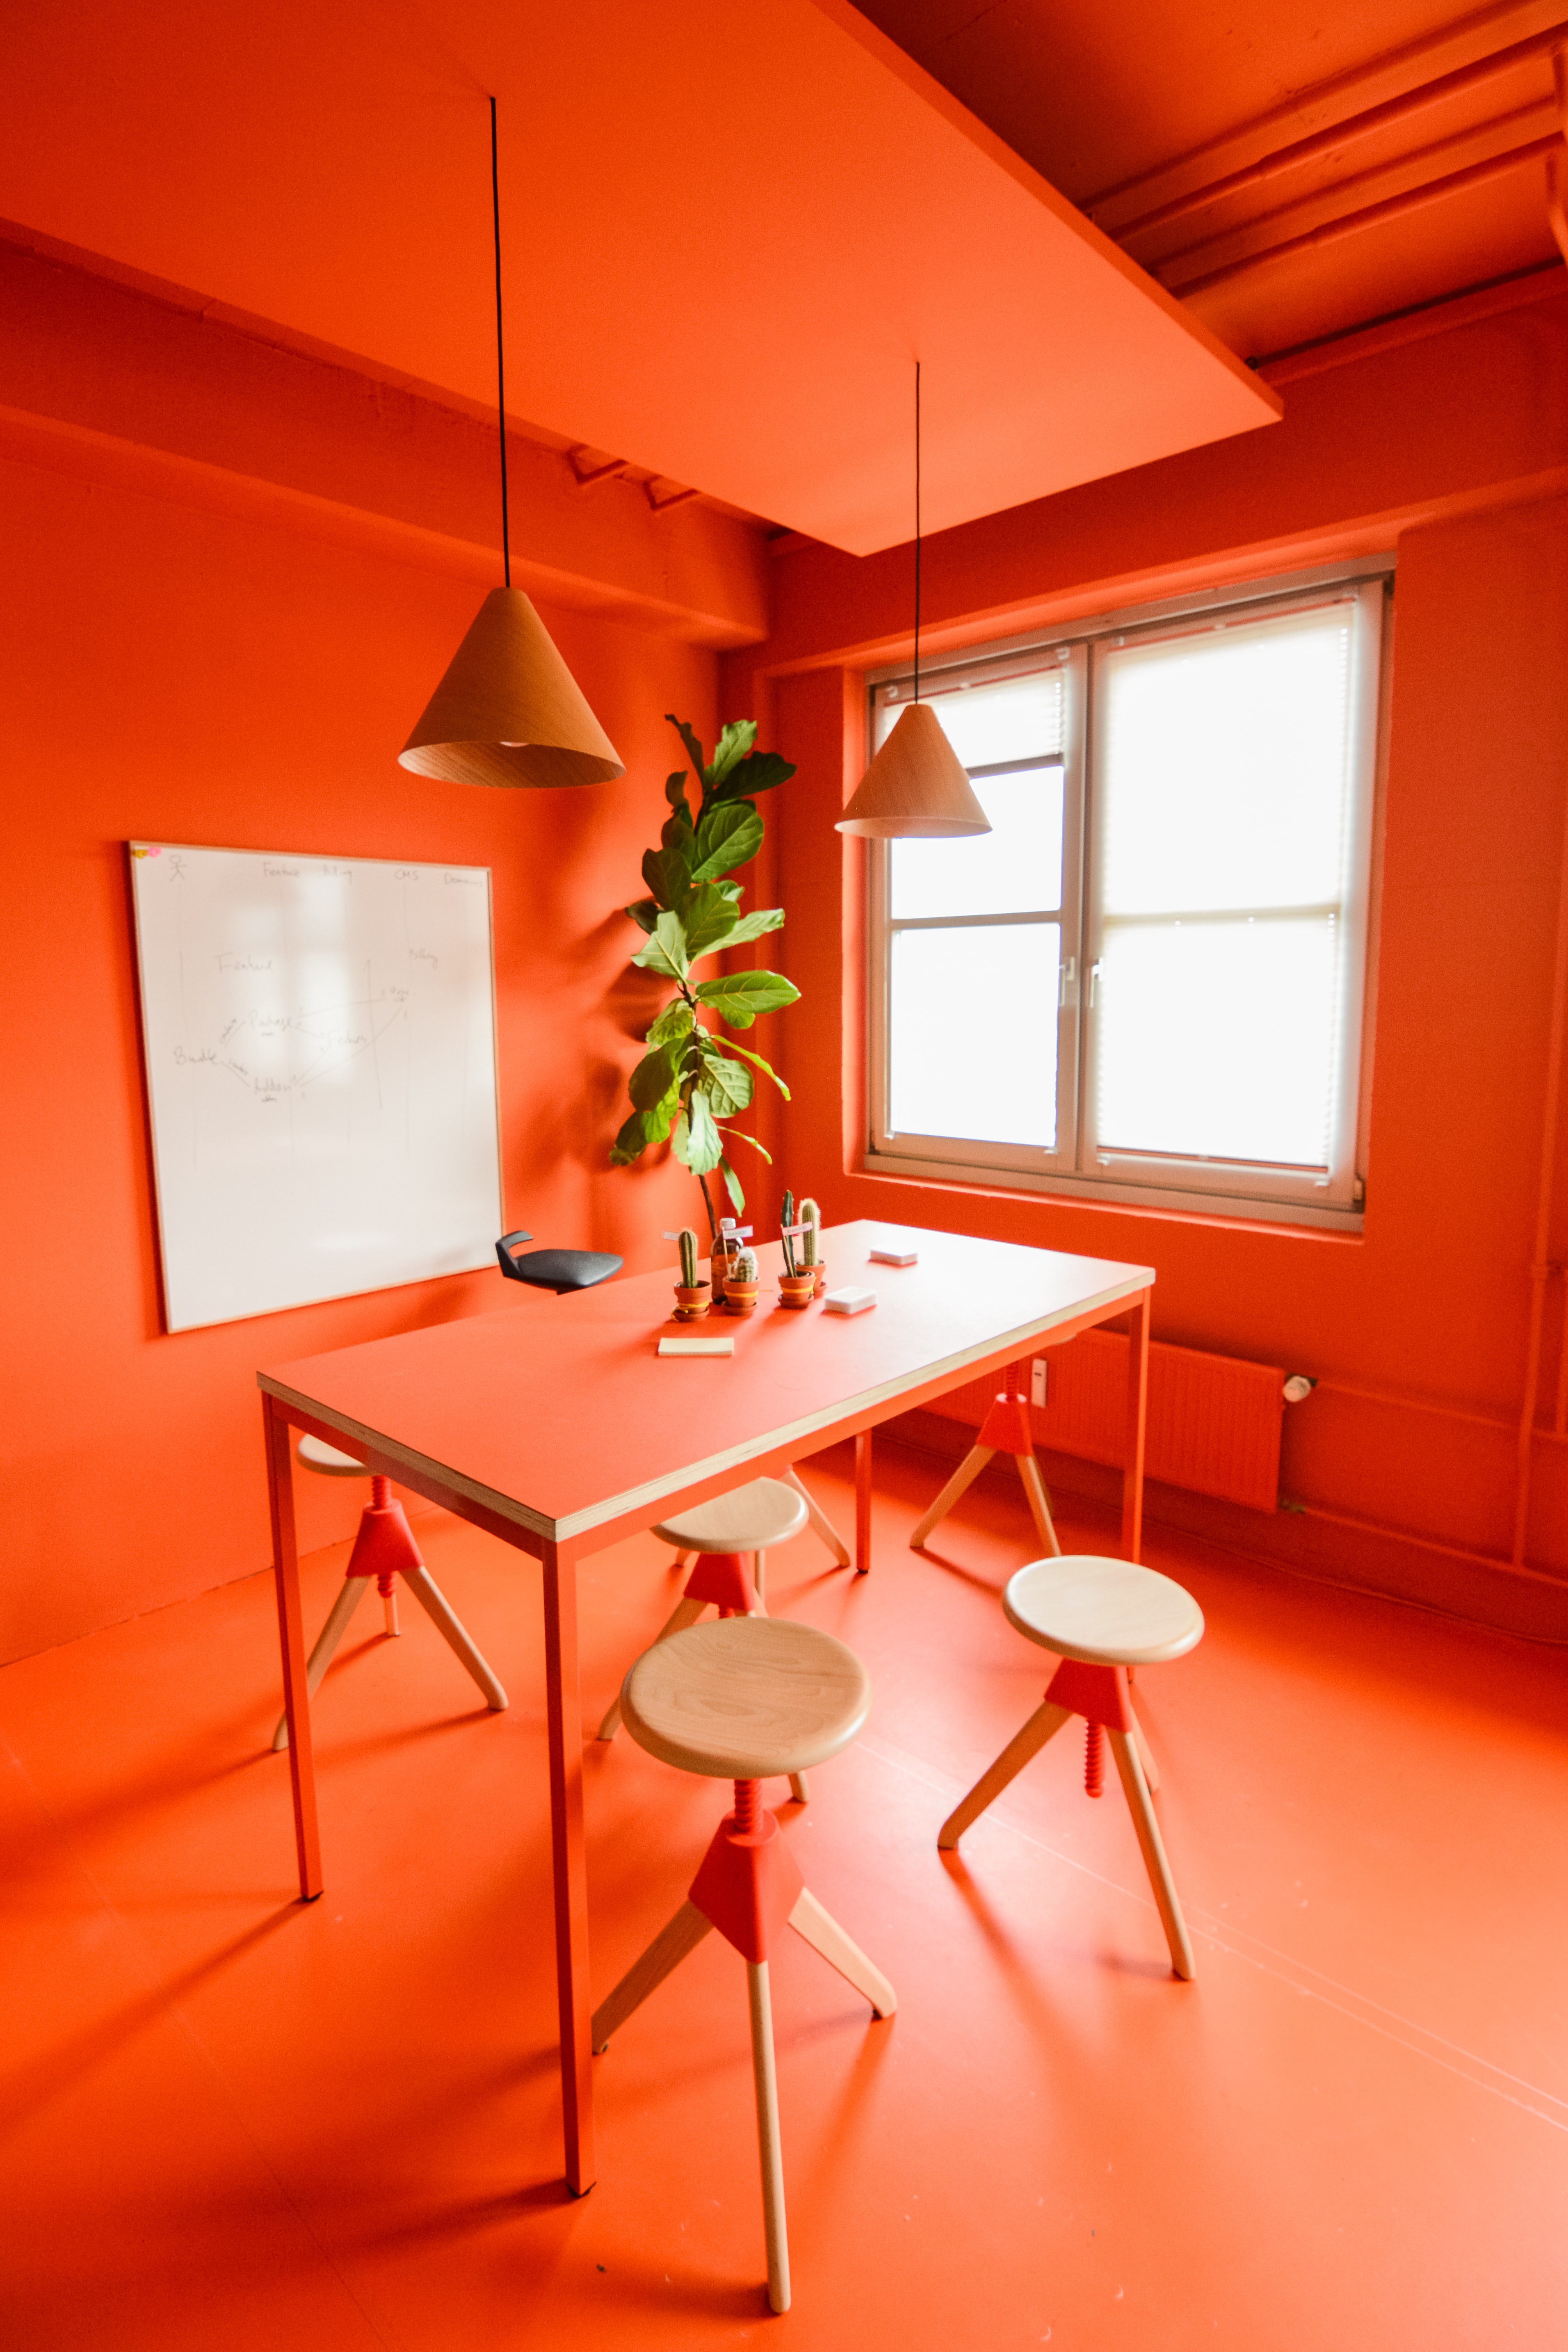 82494 скачать обои офис, оранжевый, интерьер, разное, дизайн, комната, оранжевые - заставки и картинки бесплатно